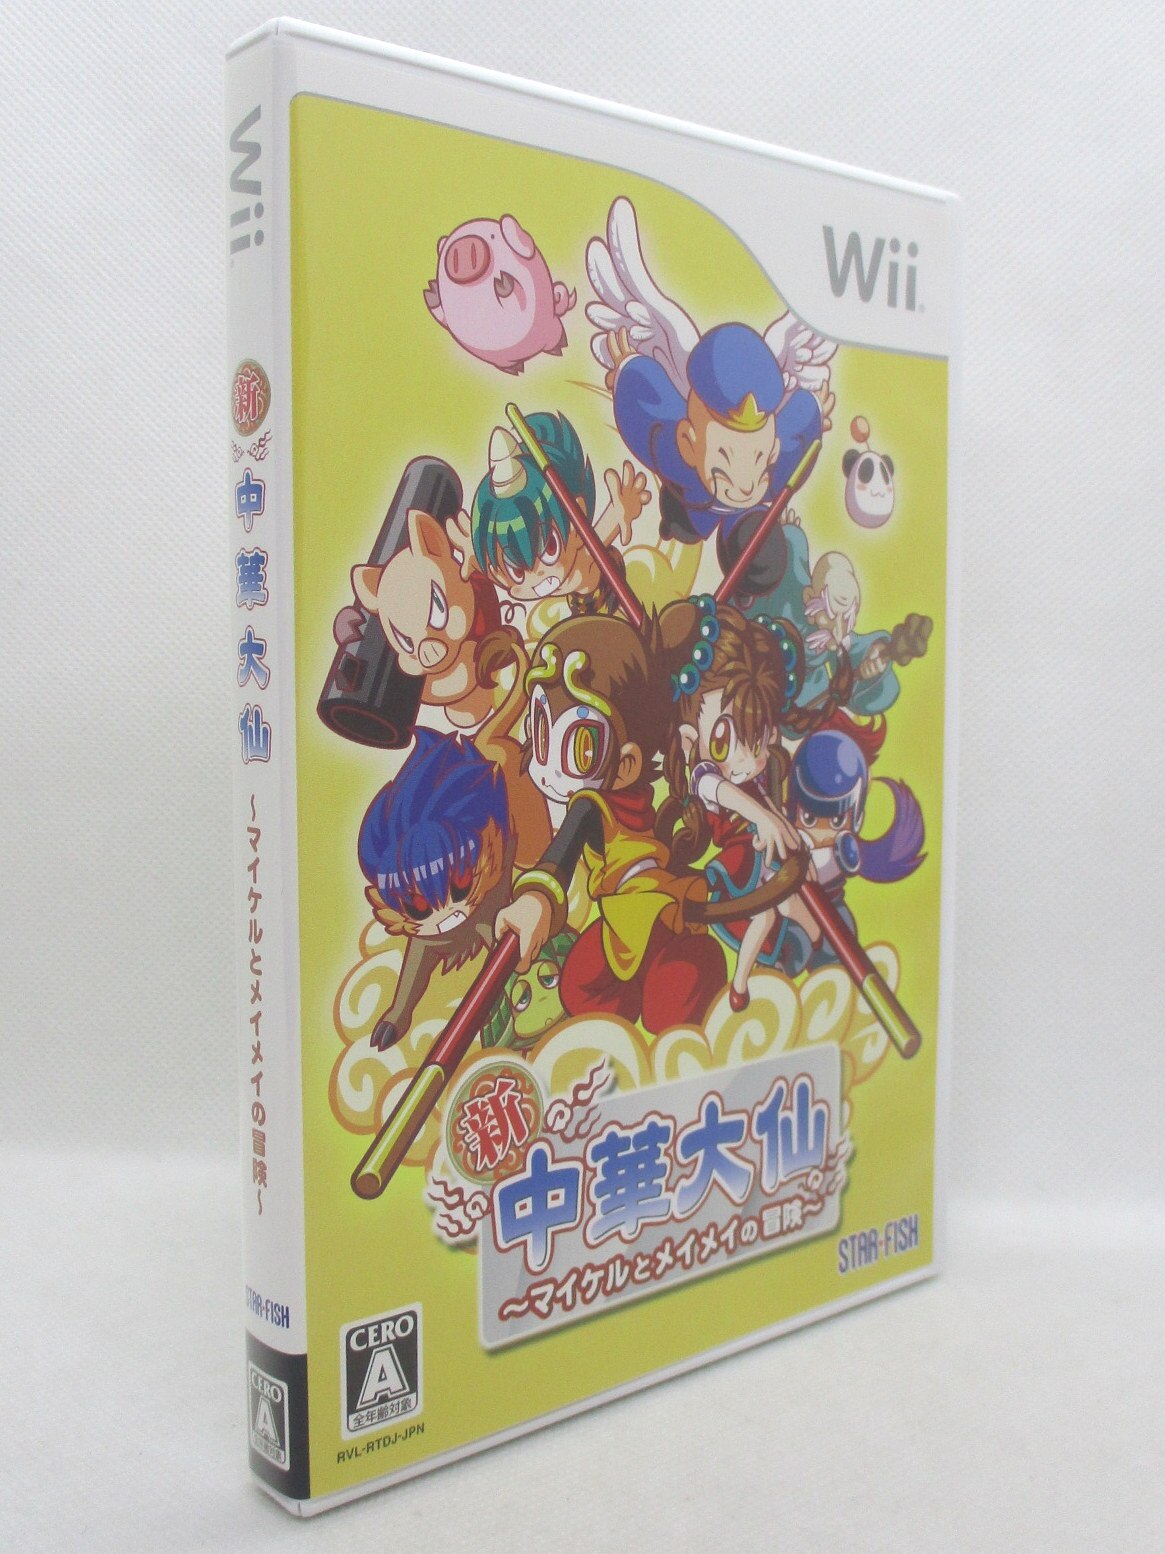 新・中華大仙 ~マイケルとメイメイの冒険~ - Wii - Wii